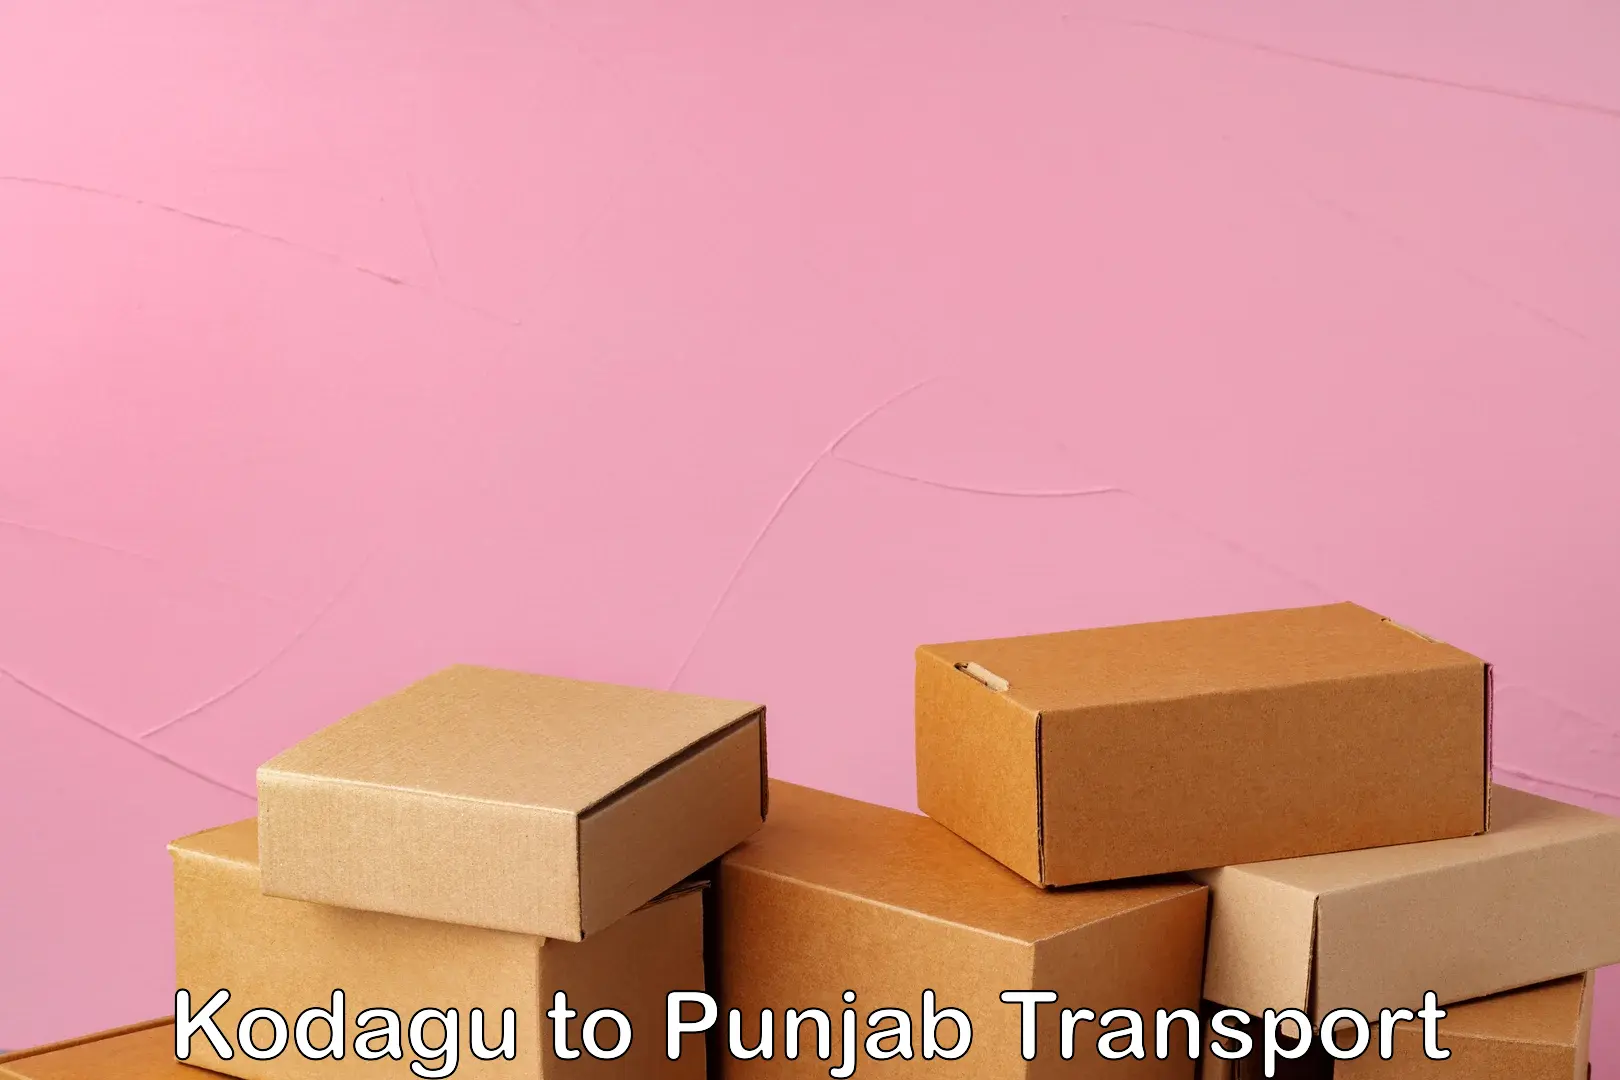 Shipping partner Kodagu to Punjab